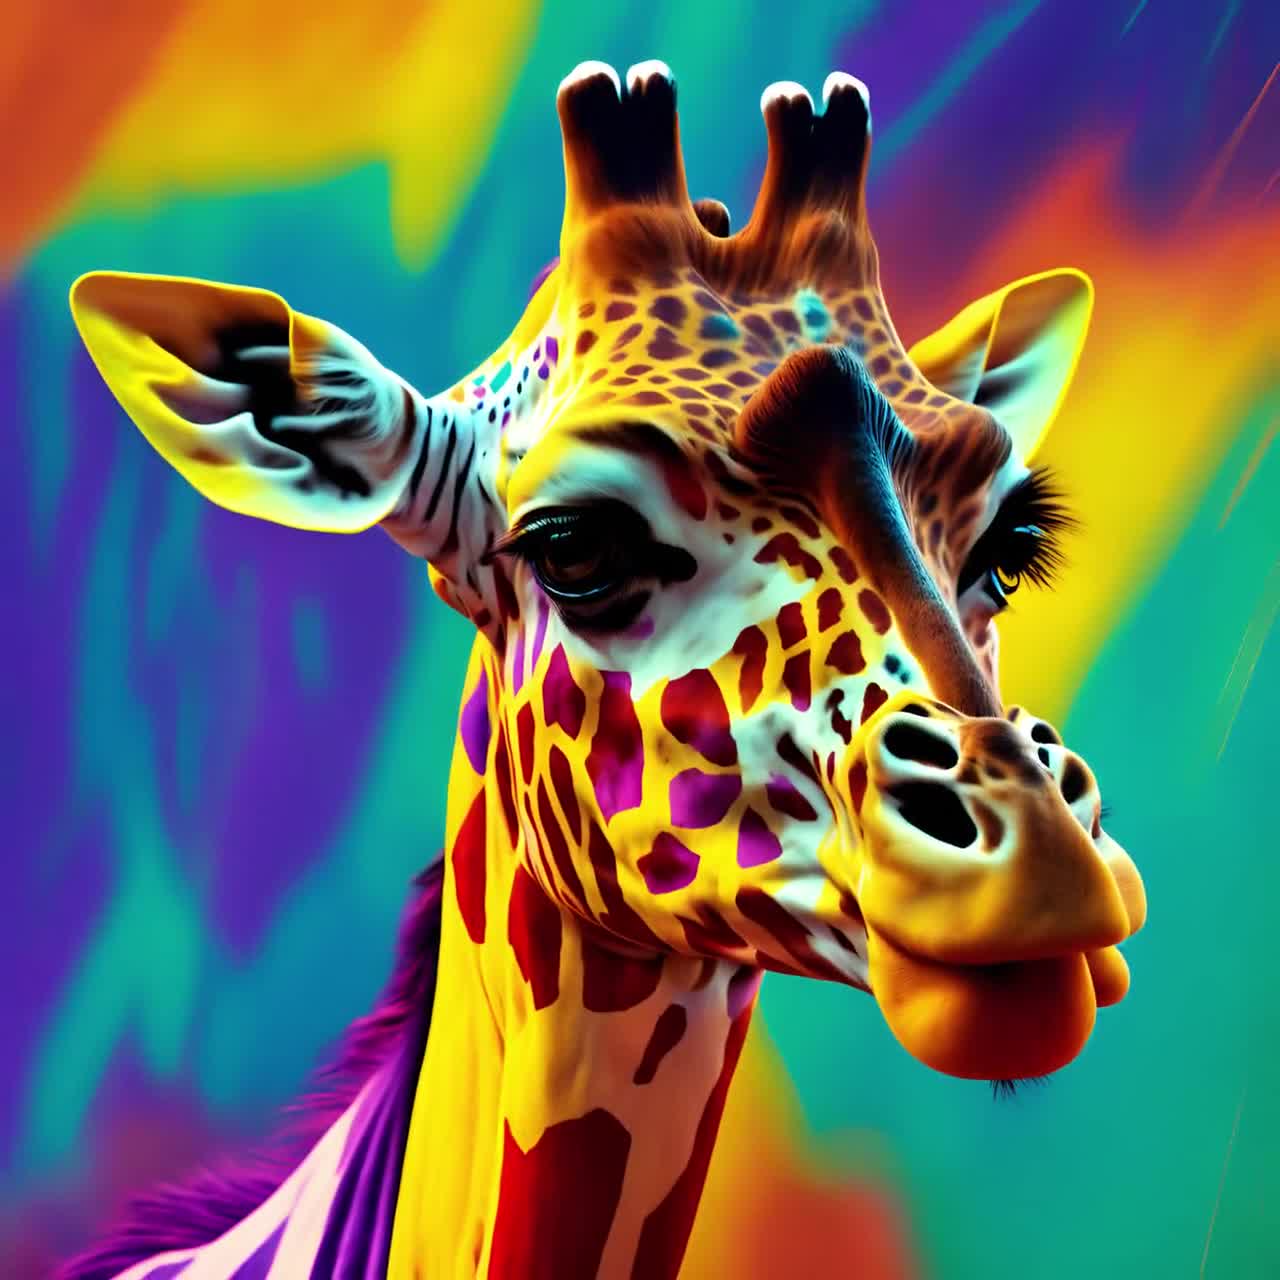 200+] Giraffe Wallpapers | Wallpapers.com